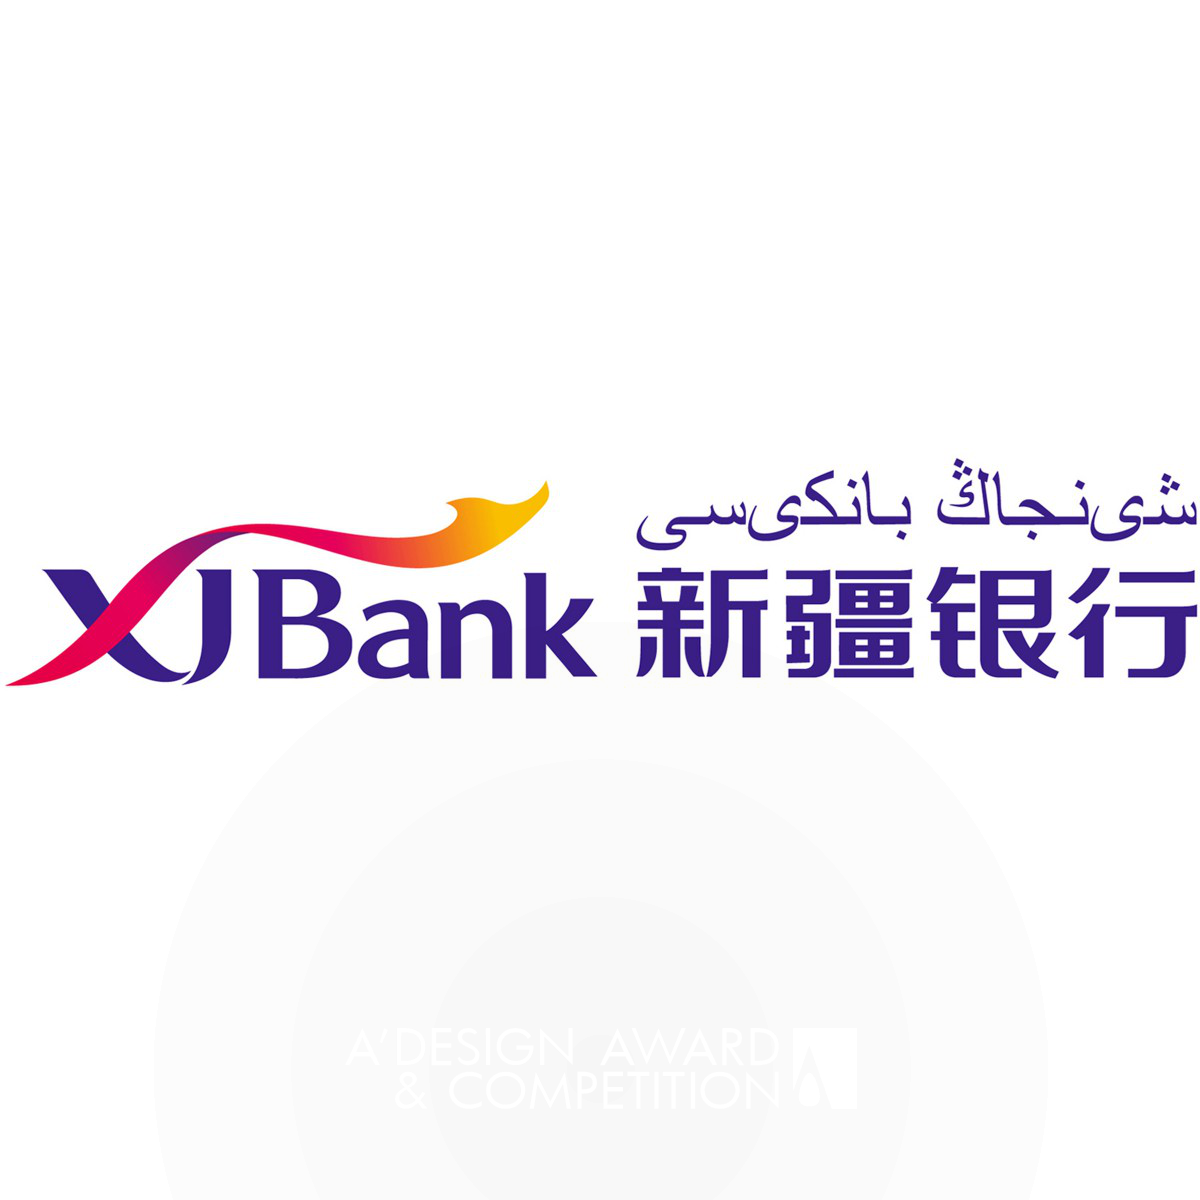 XJ Bank